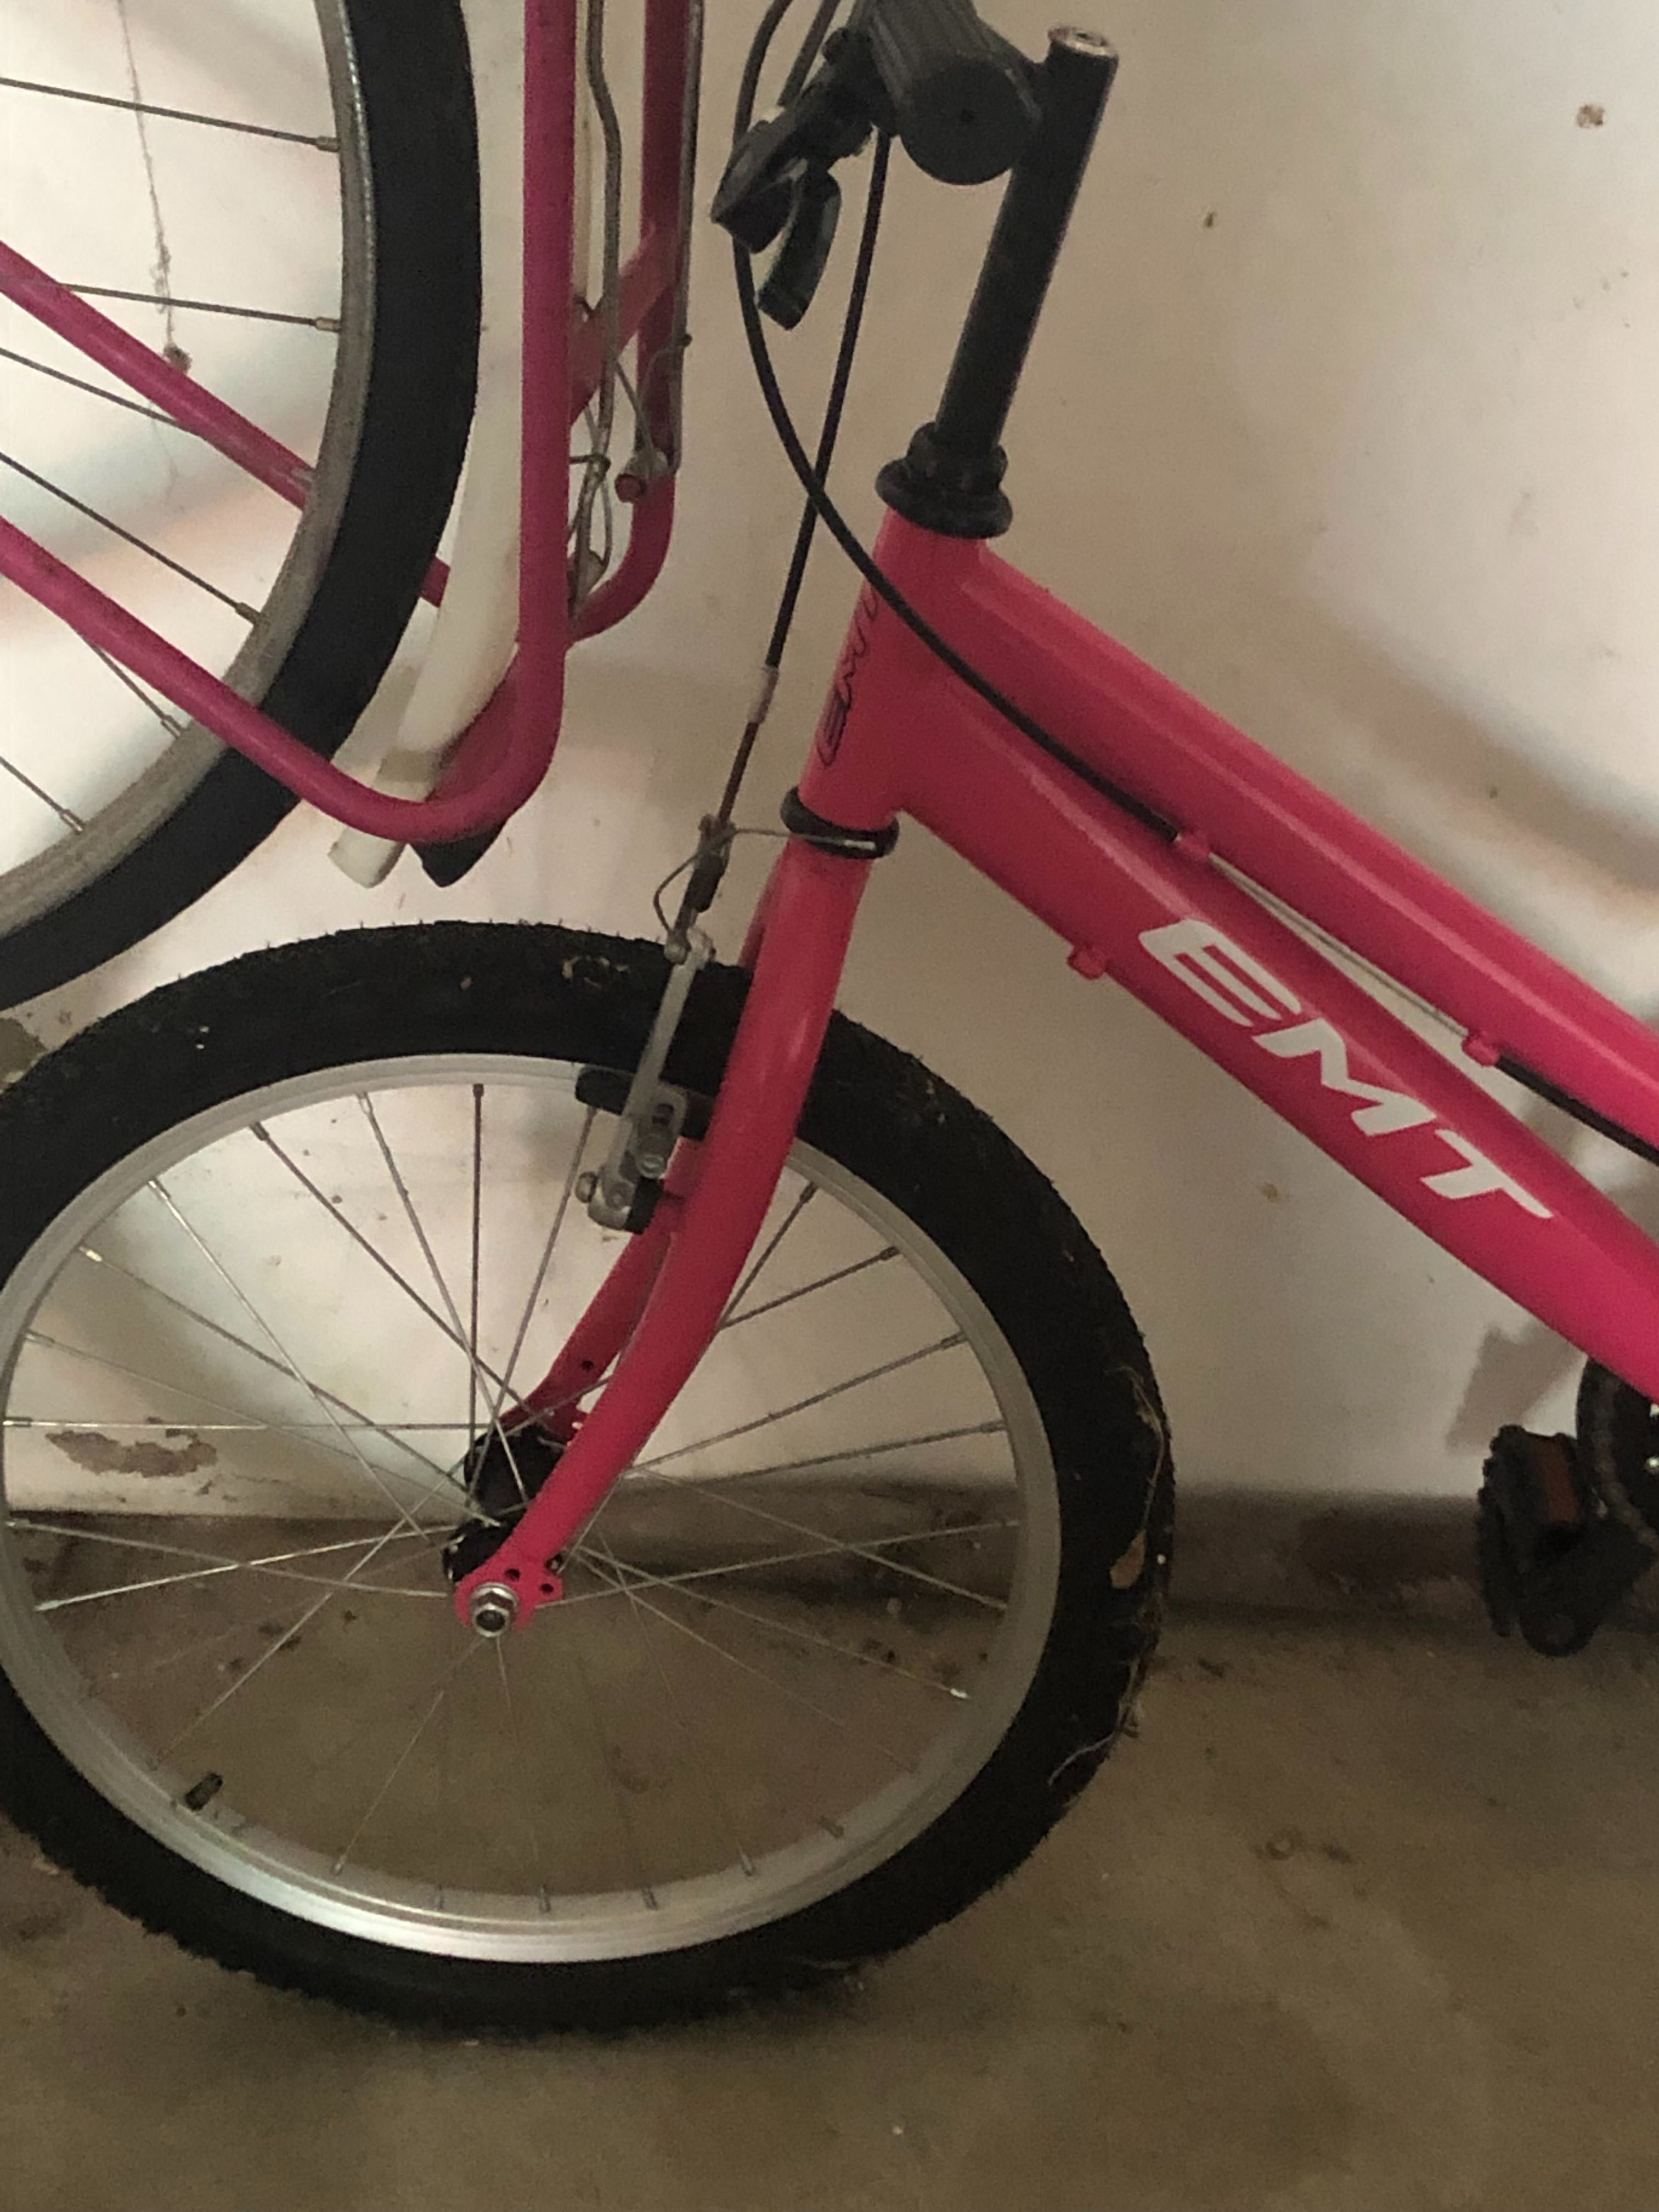 Bicicleta de criança Rosa